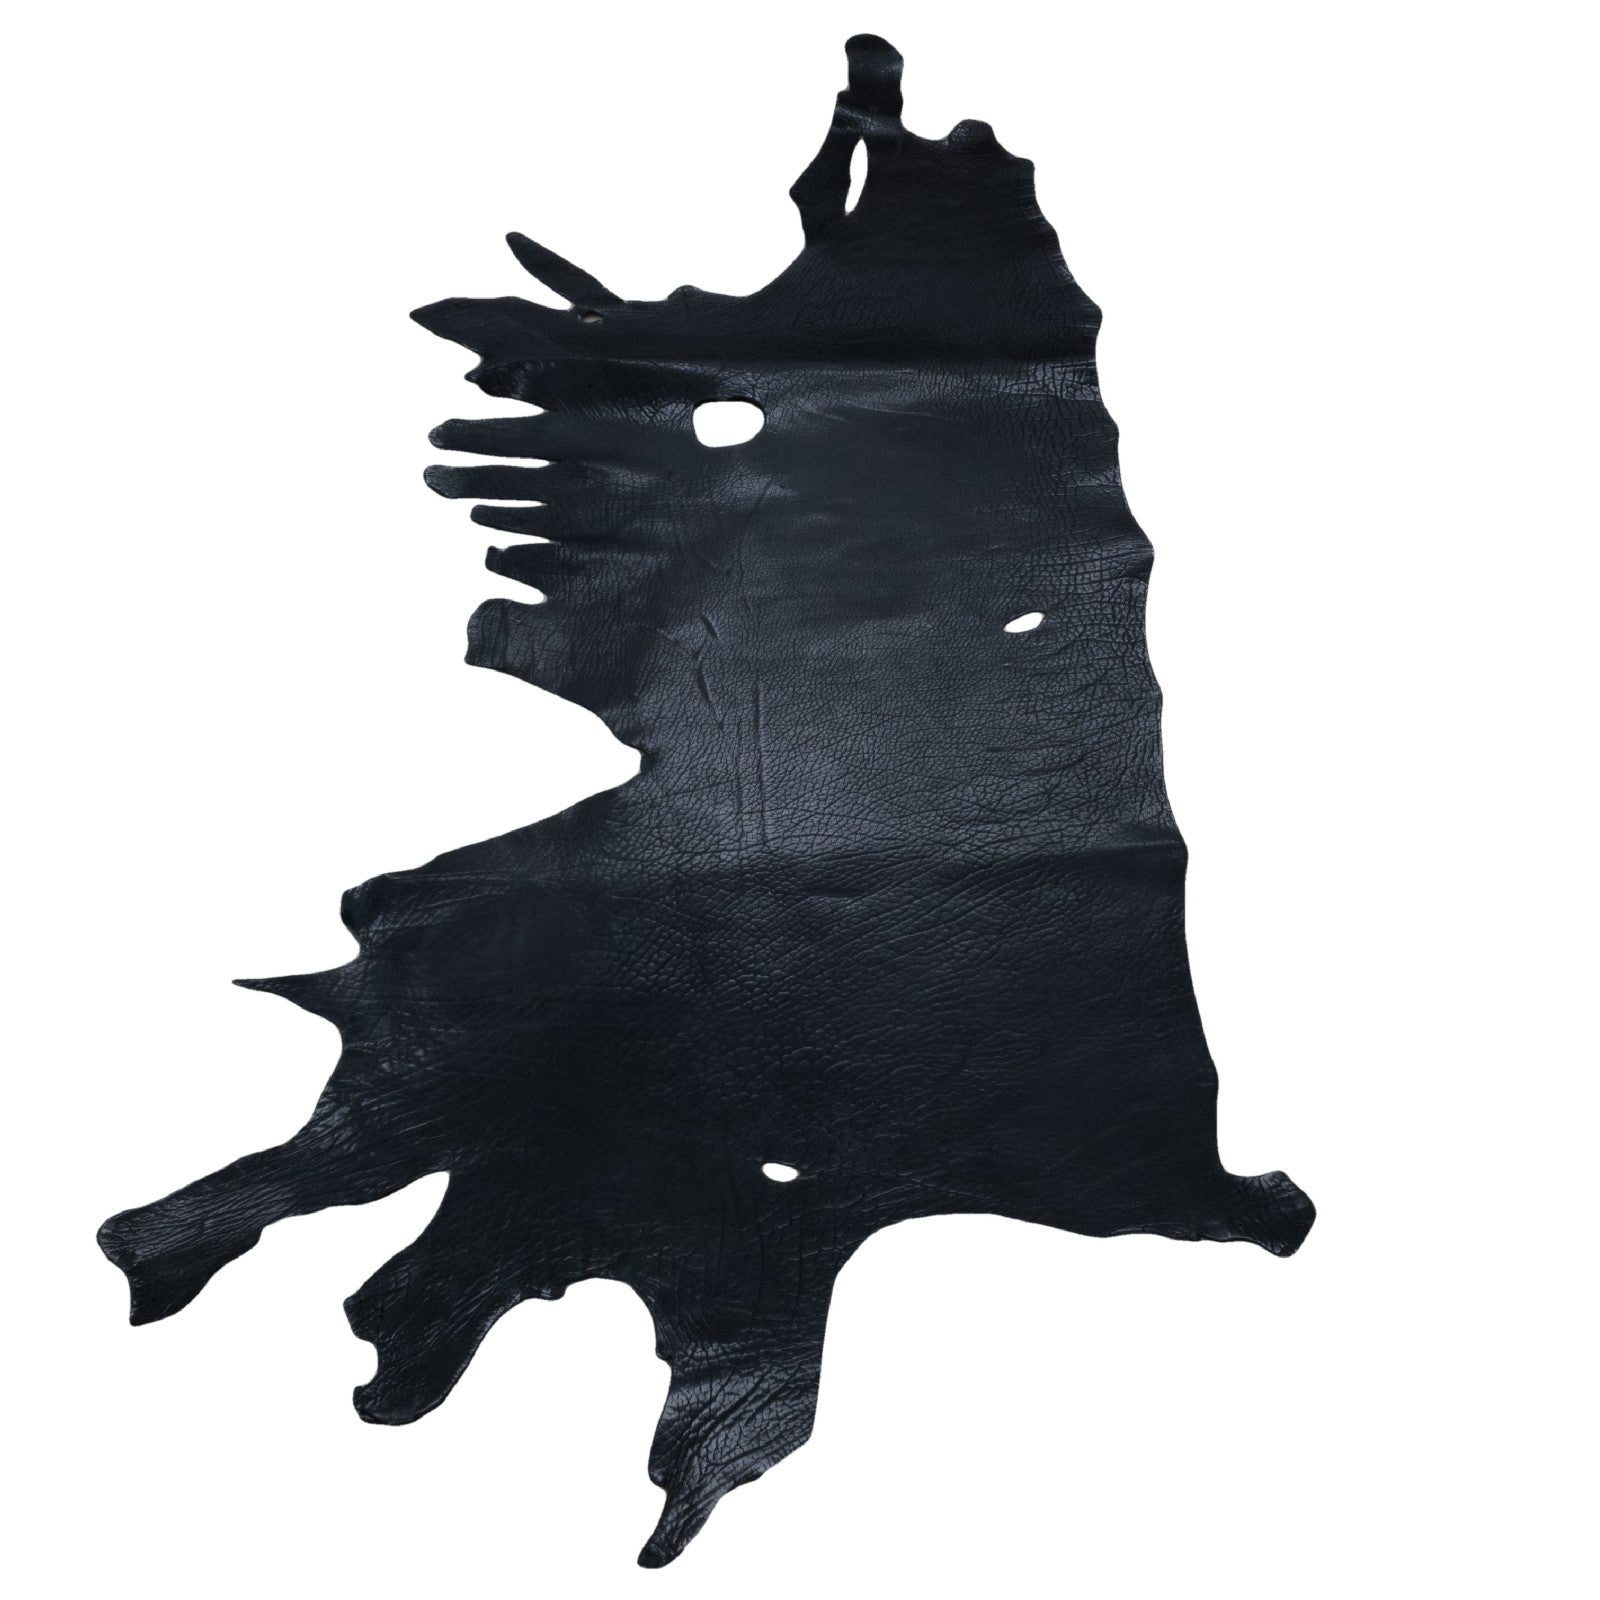 Badlands Black, 5-6 oz, 12-20 Sq Ft, Bison Sides, Low Grade 15-17 Sq Ft | The Leather Guy